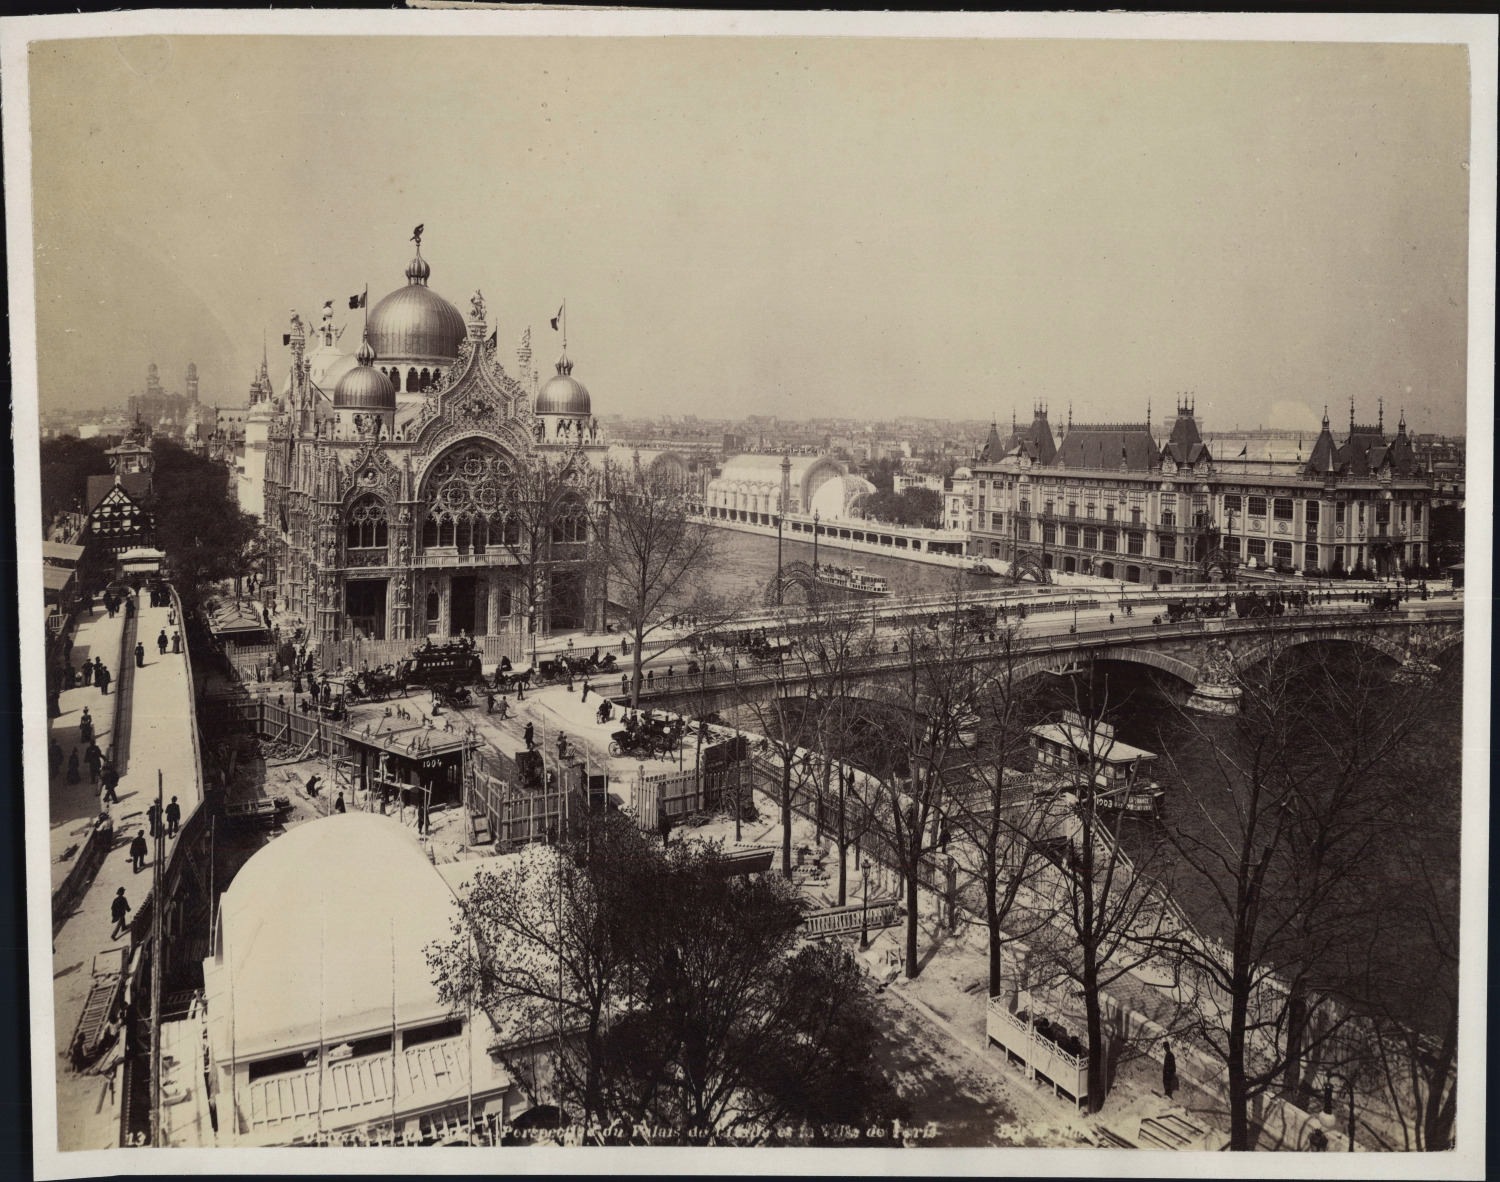 France, Paris, 1900 Universal Exhibition, Palais de l'Italie vintage p